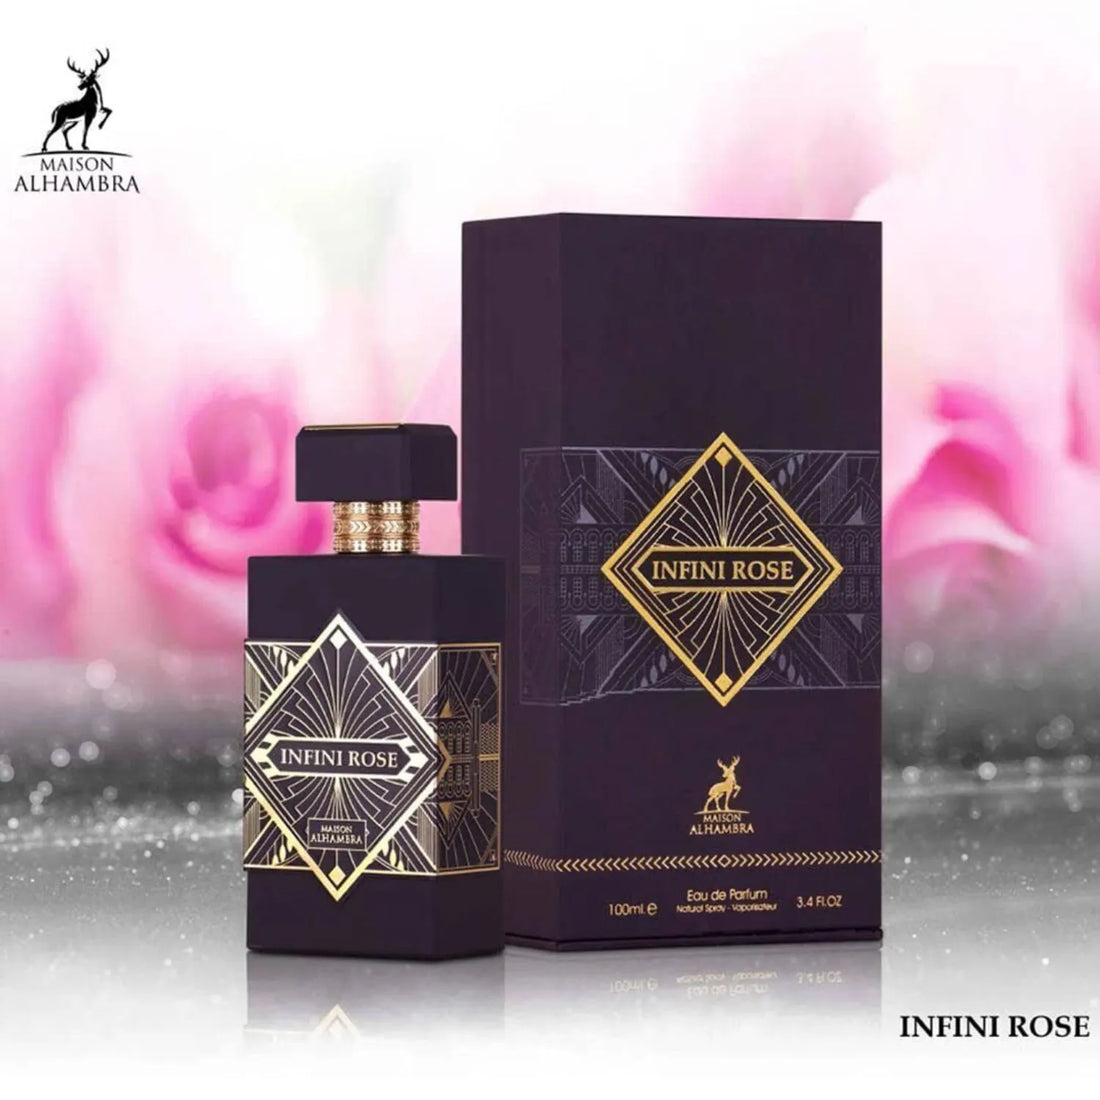 Infini Rose Perfume Bottle